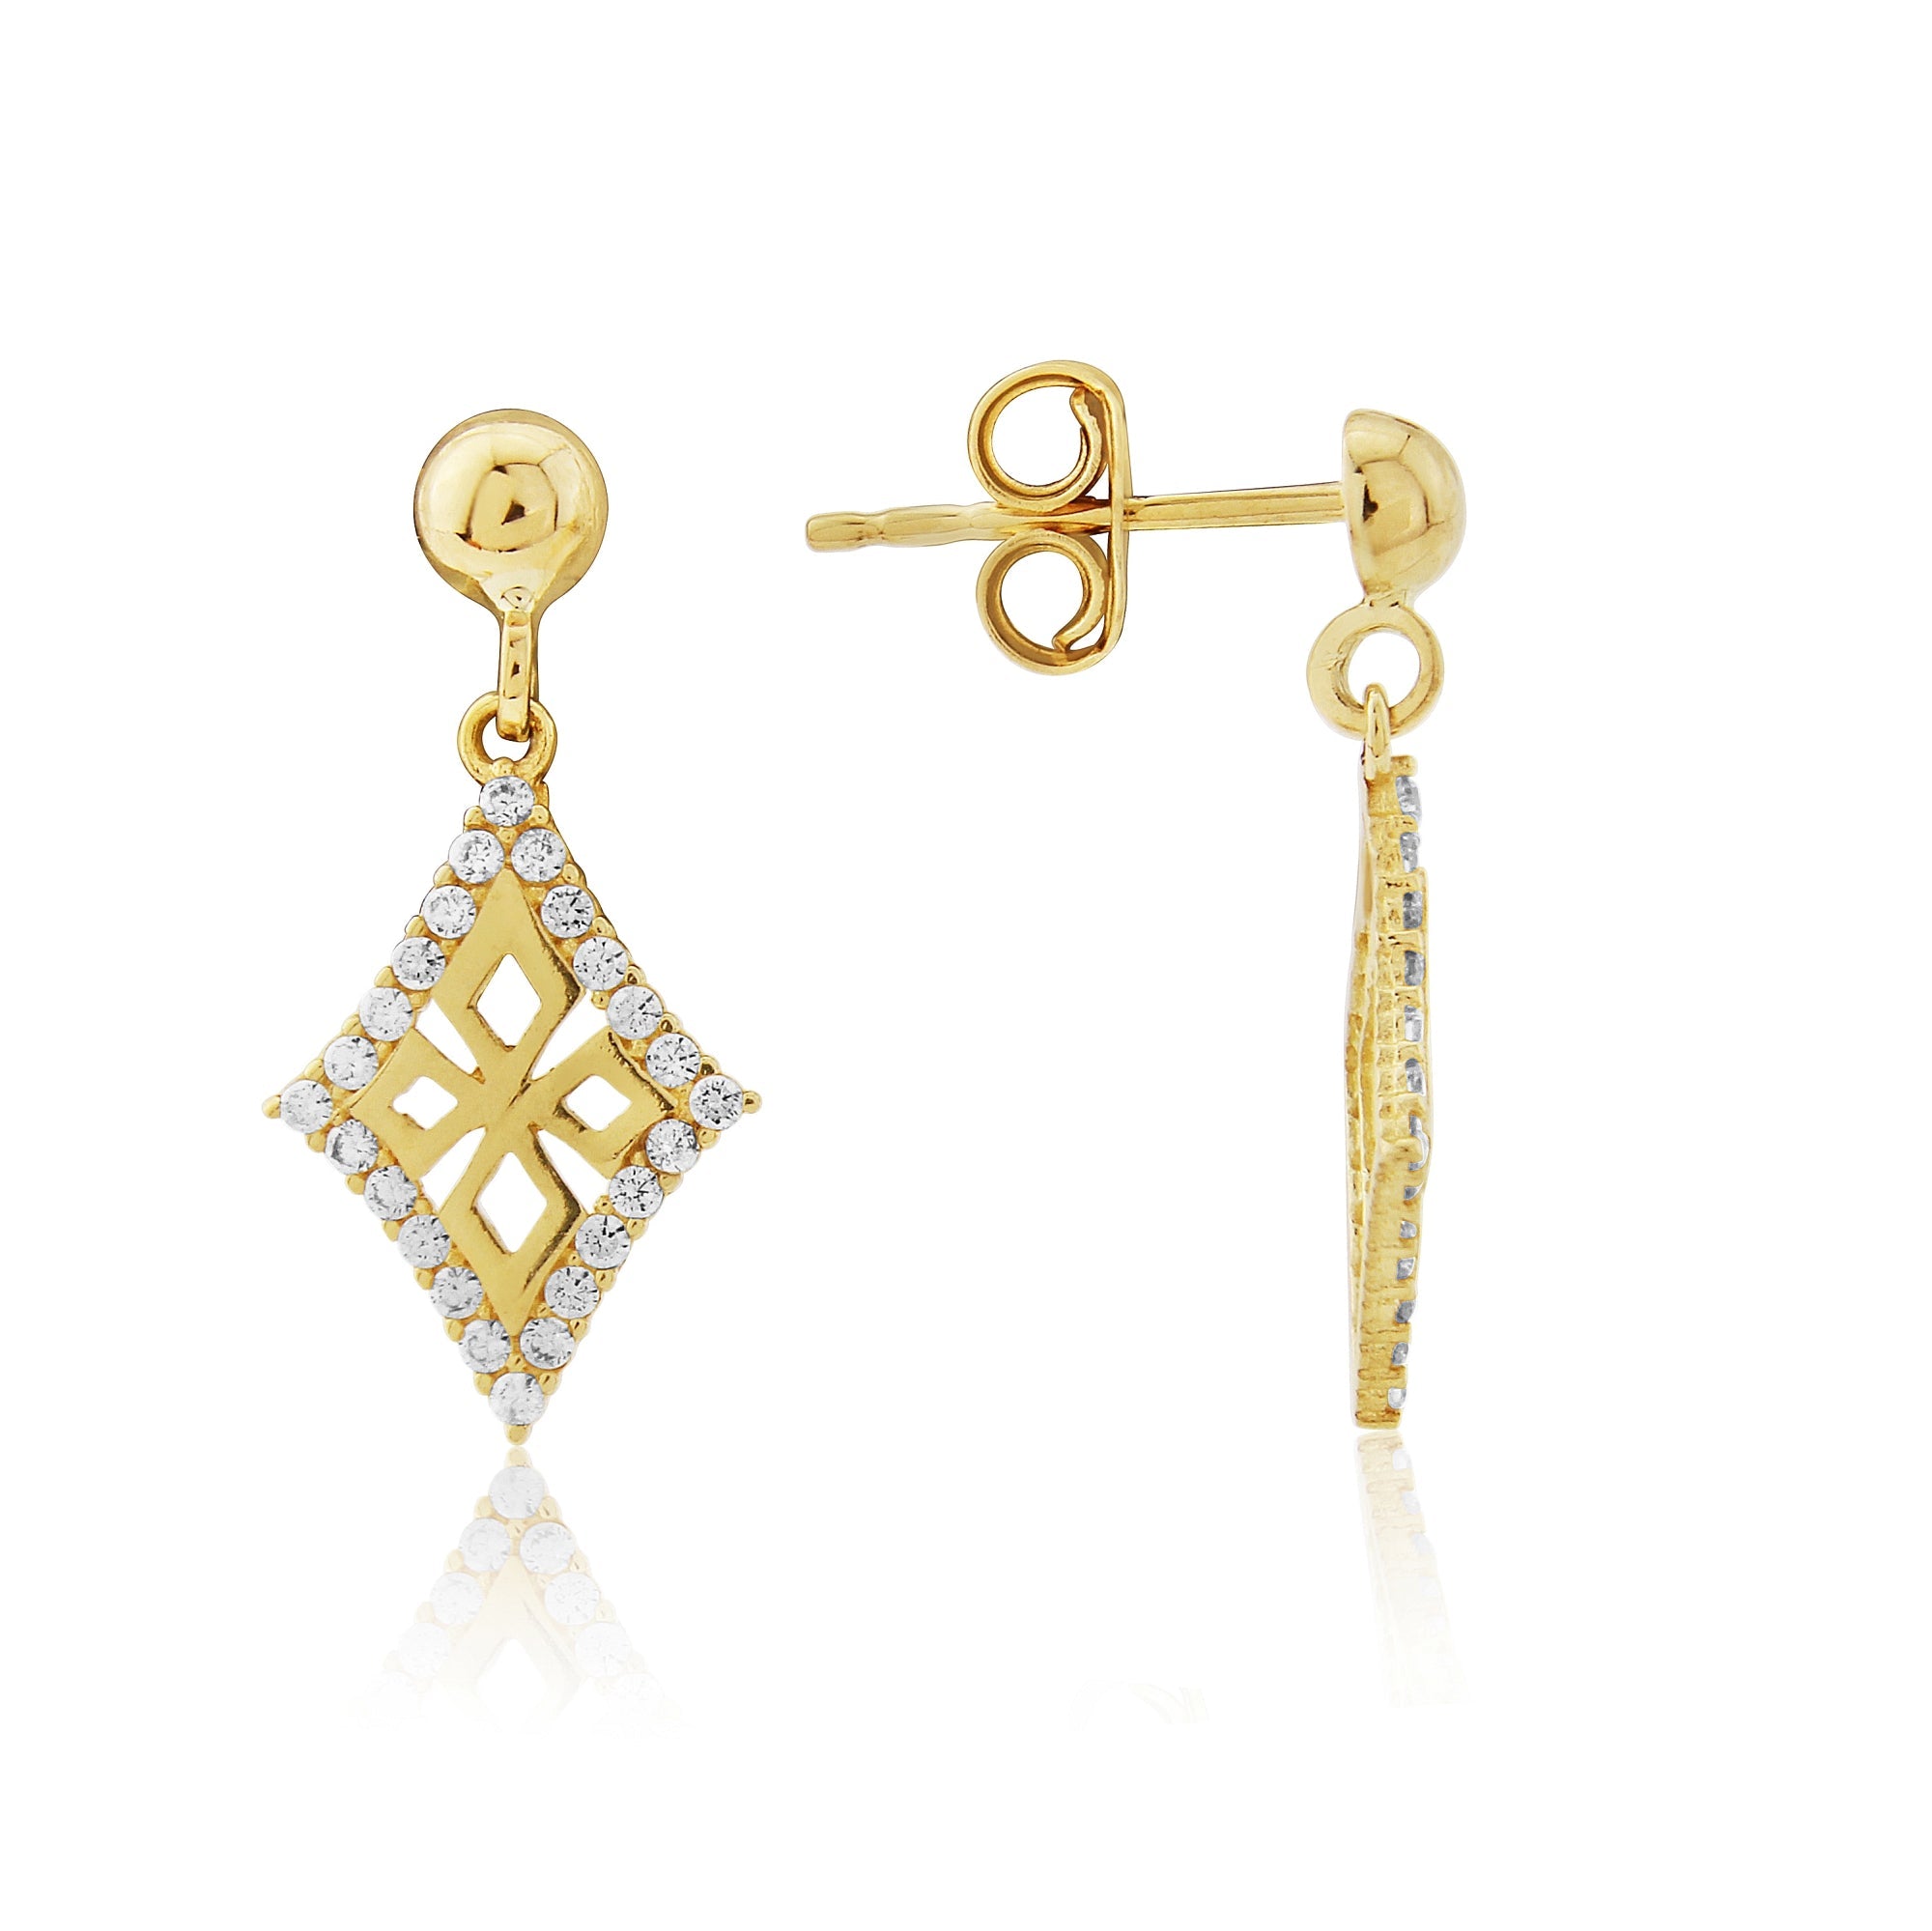 9ct gold cz drop earrings